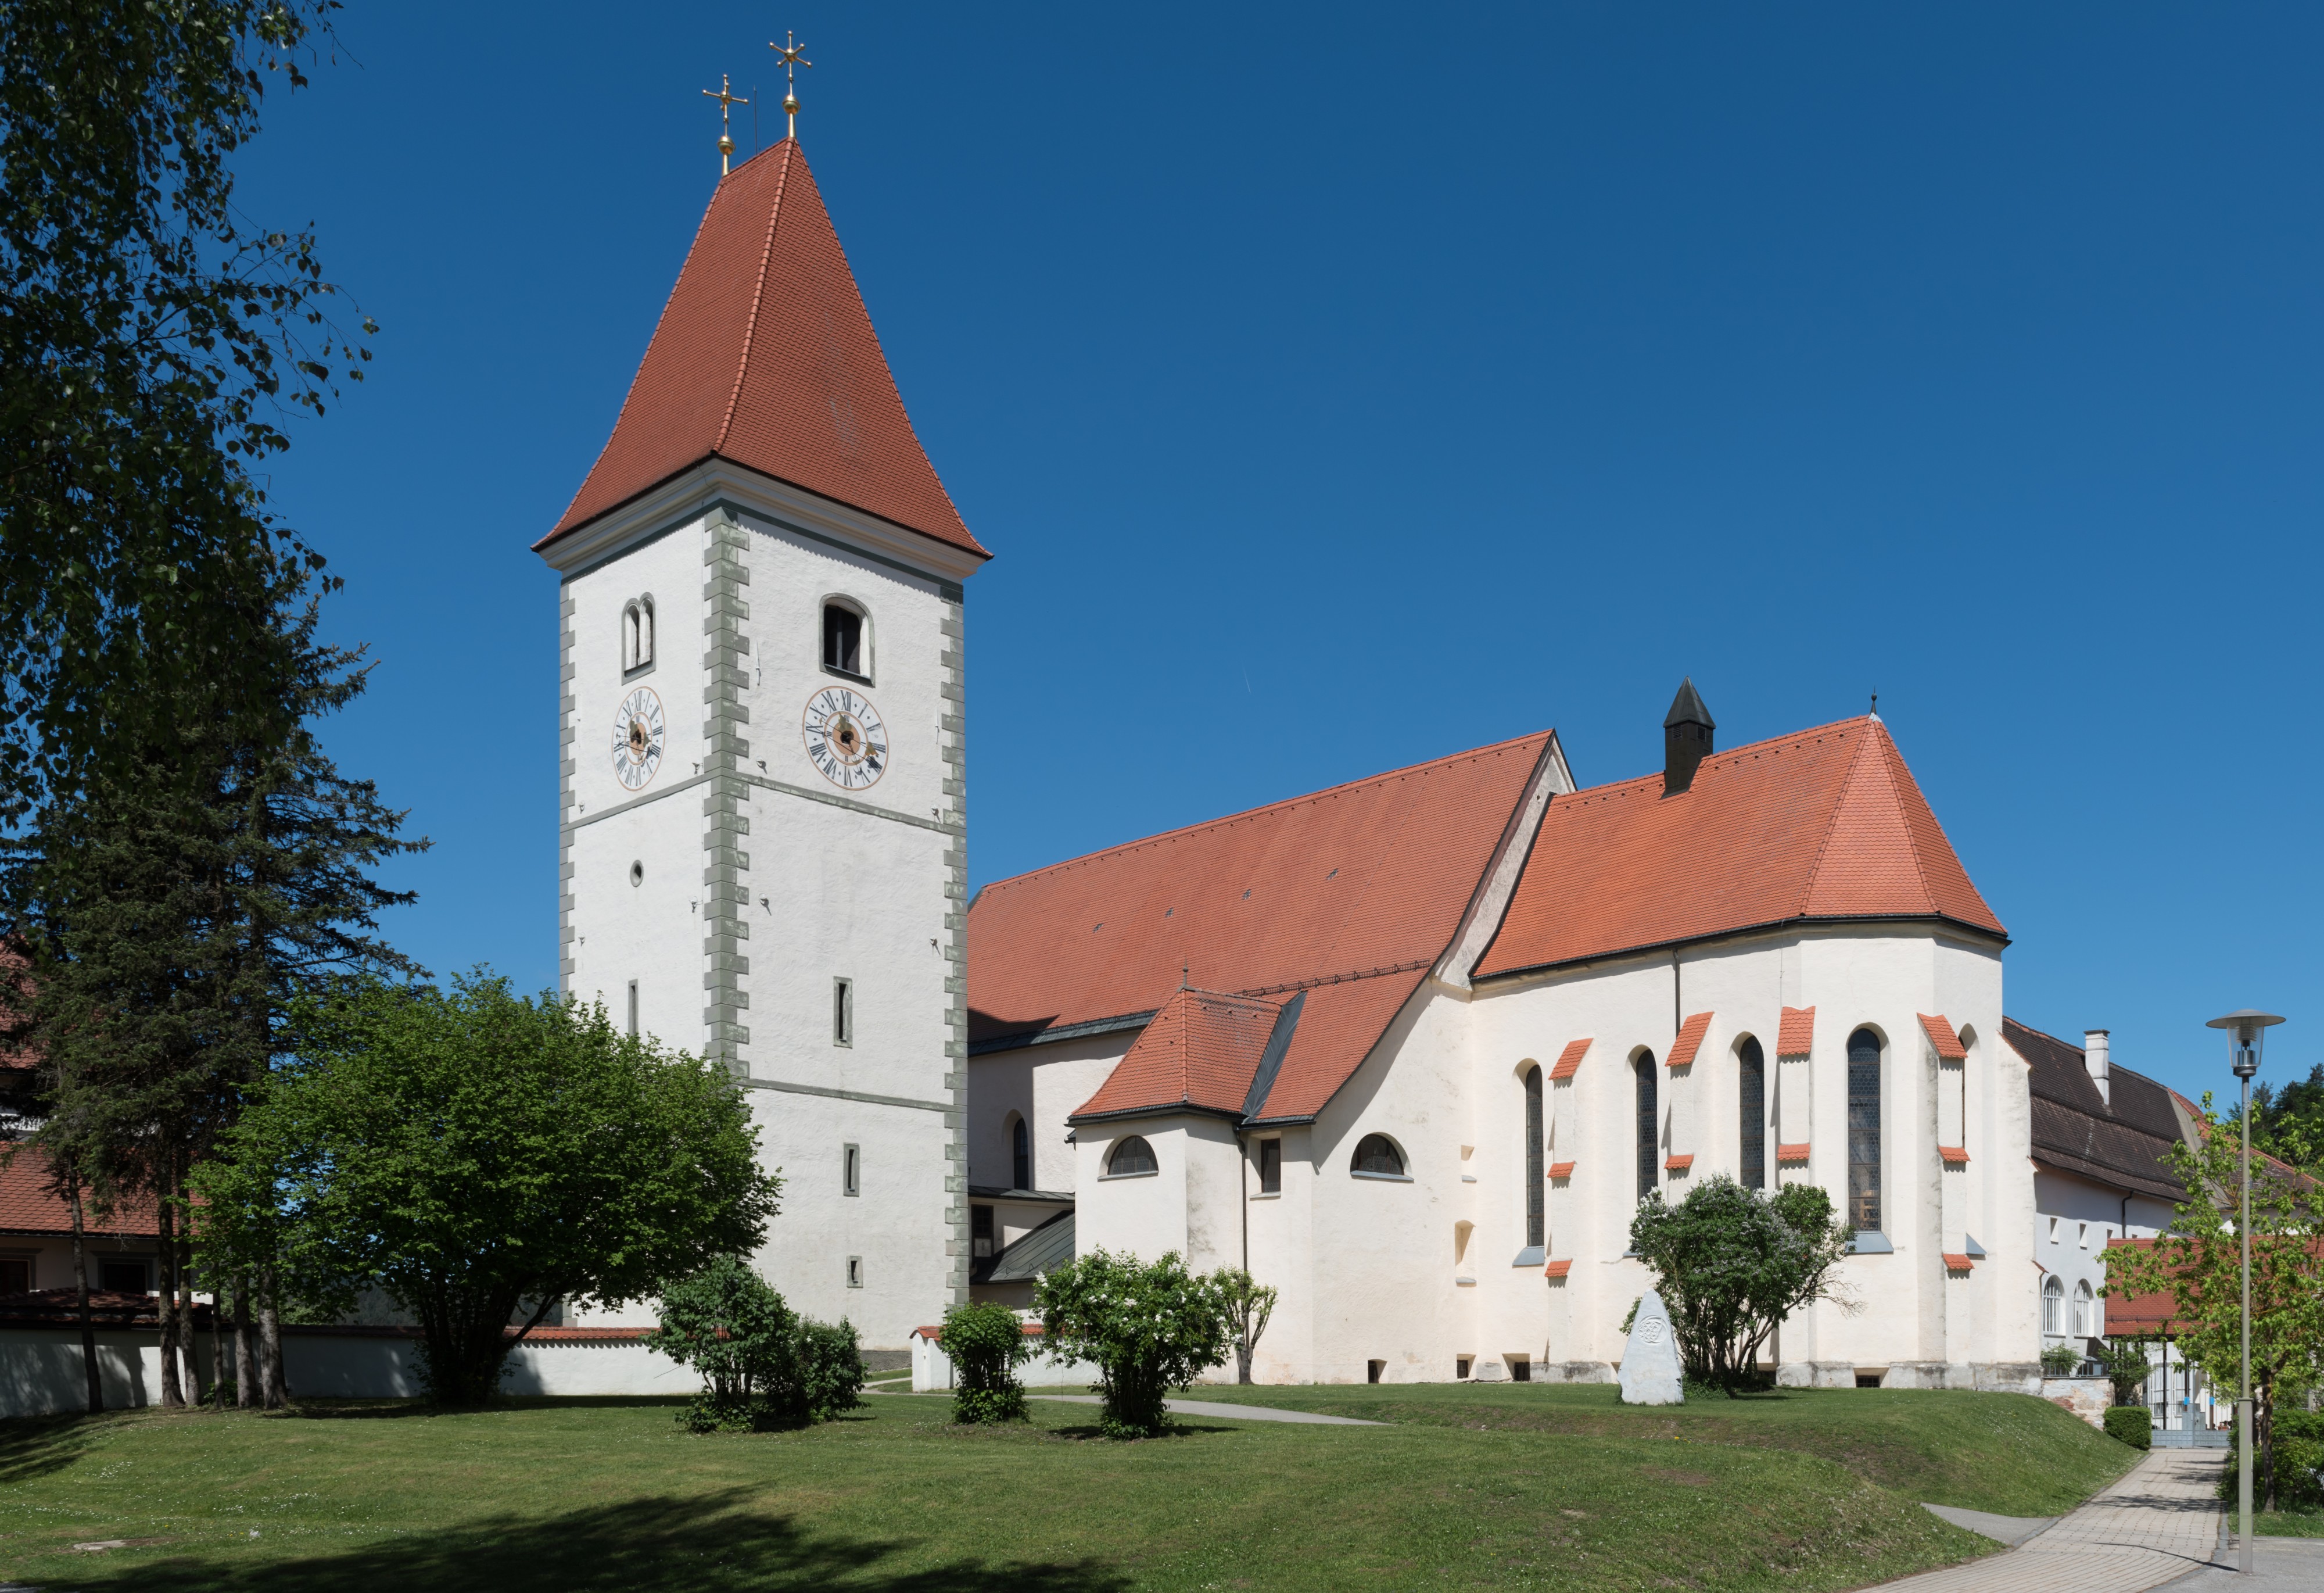 Eberndorf Stiftskirche Mariä Himmelfährt mit Turm 07052015 3293